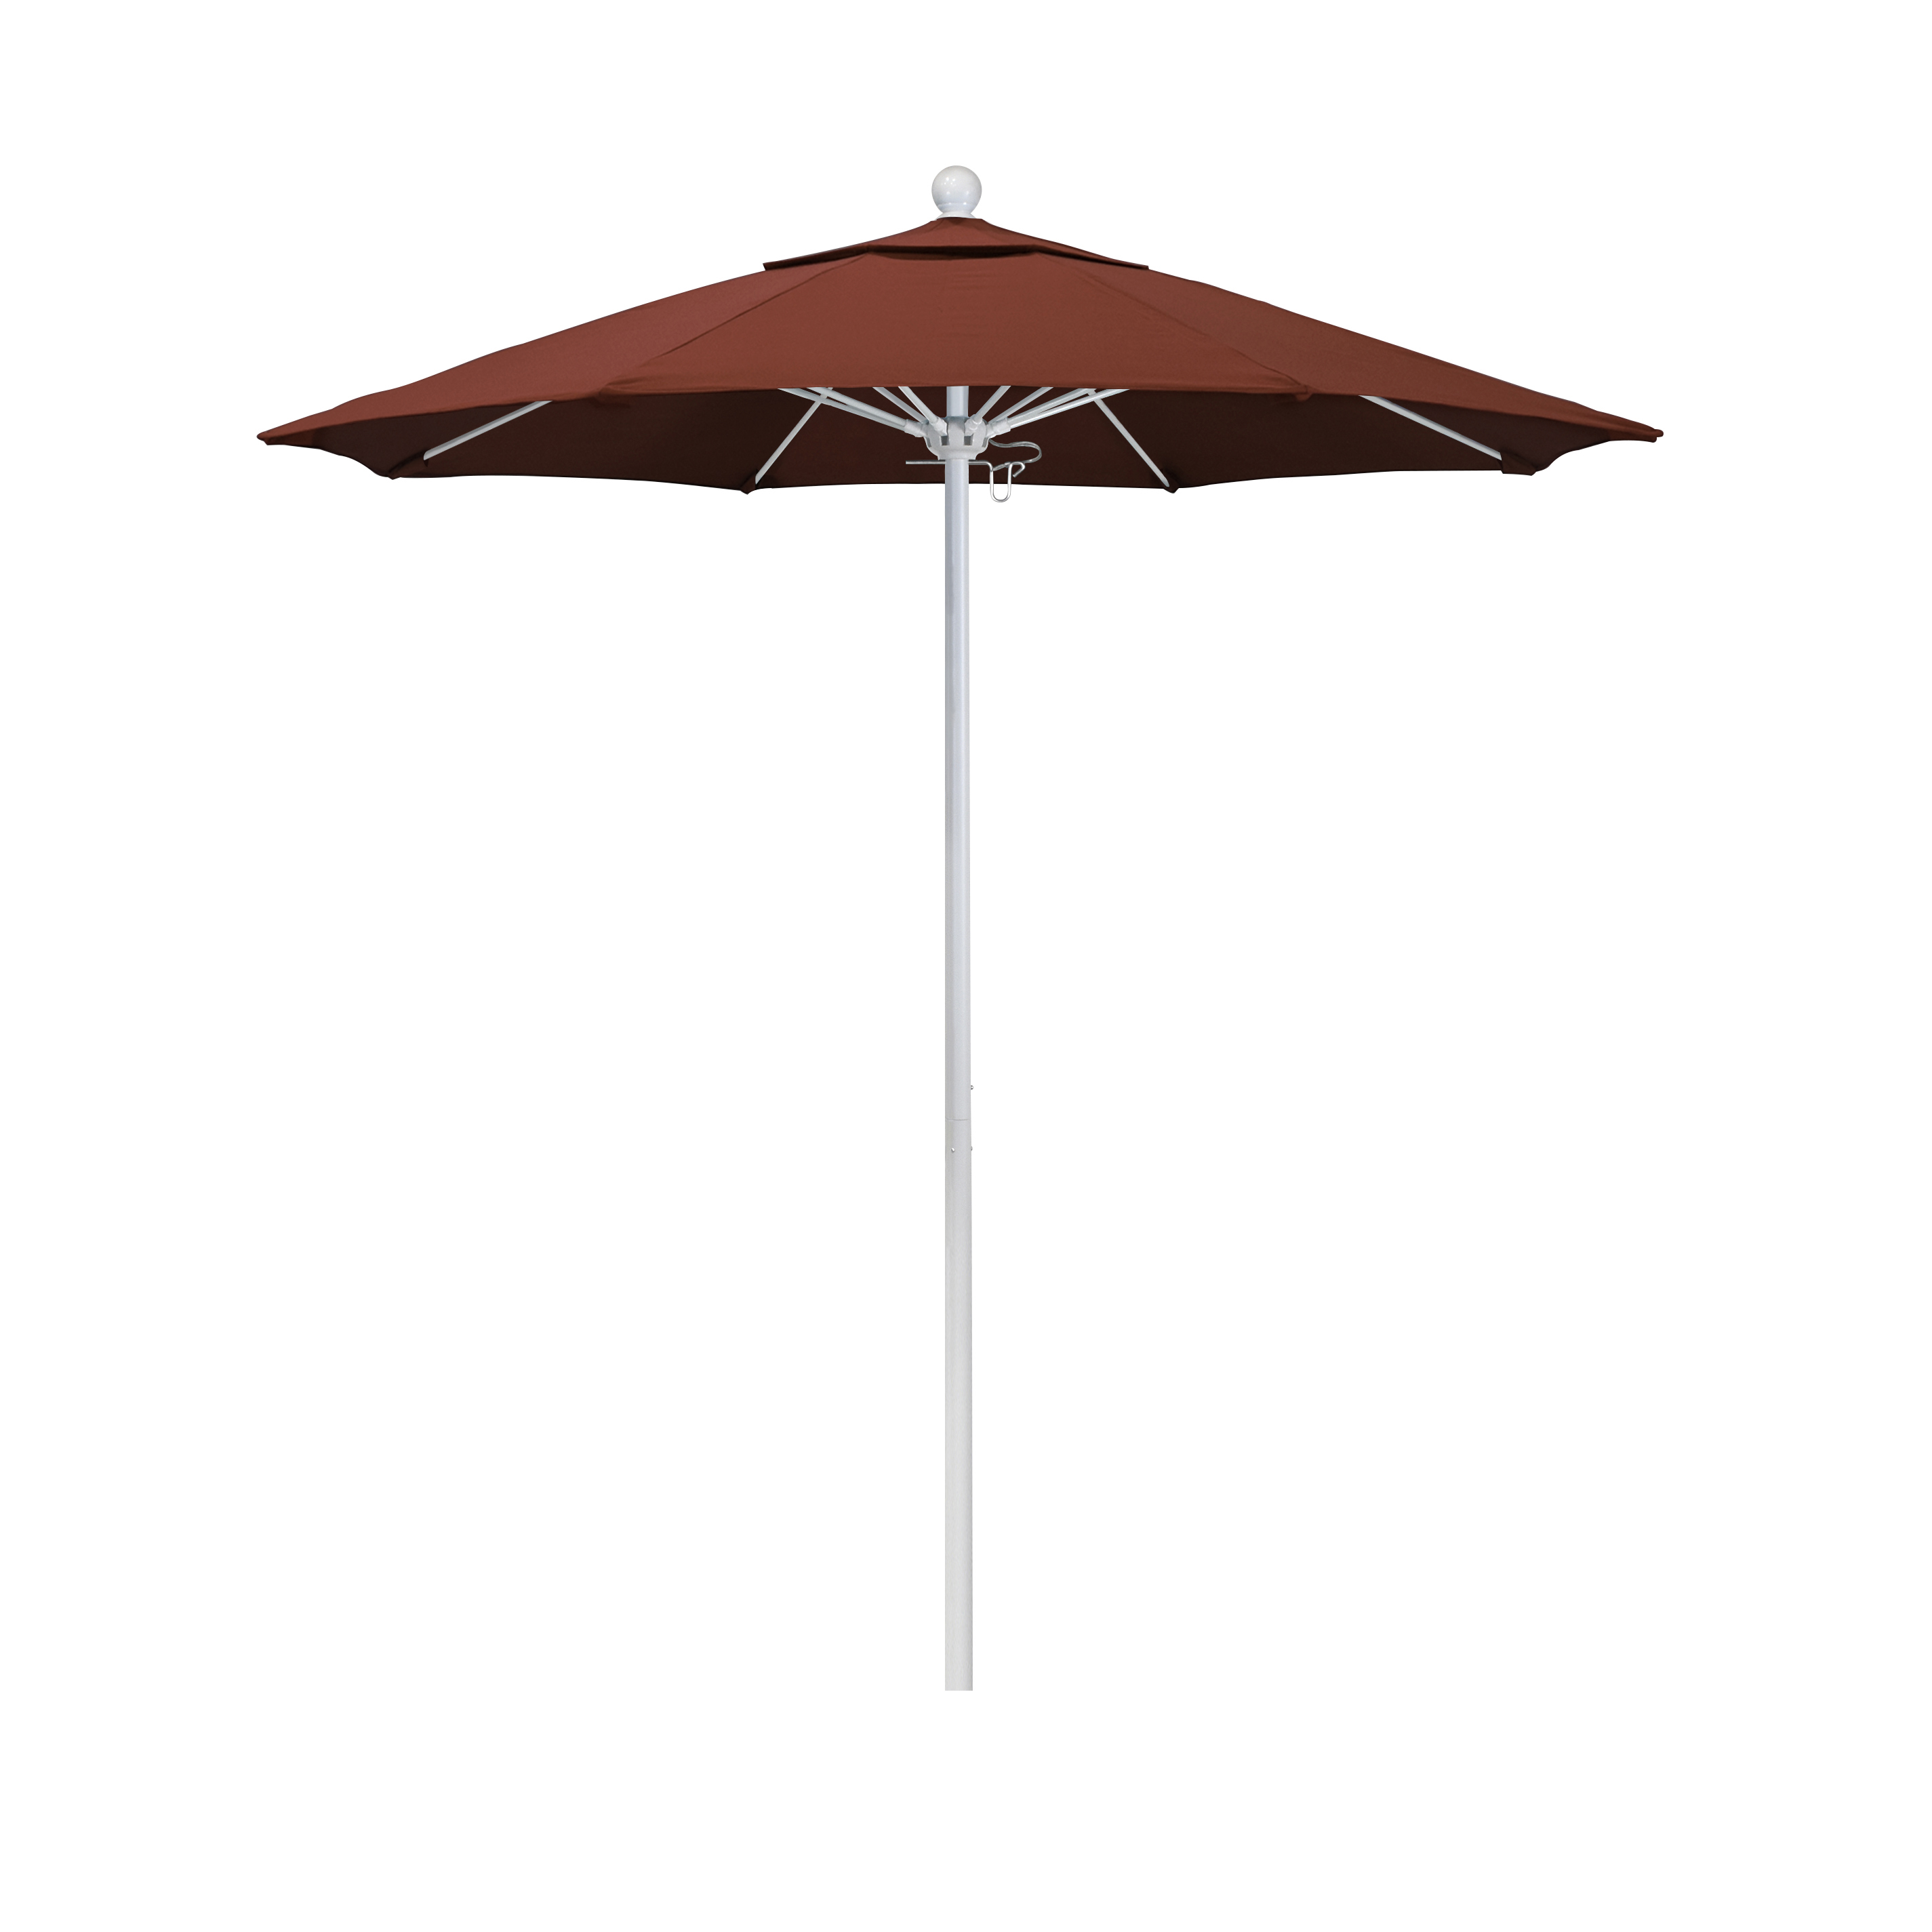 Alto758170-5440 7.5 Ft. Fiberglass Pulley Open Market Umbrella - Matted White And Sunbrella-terracotta